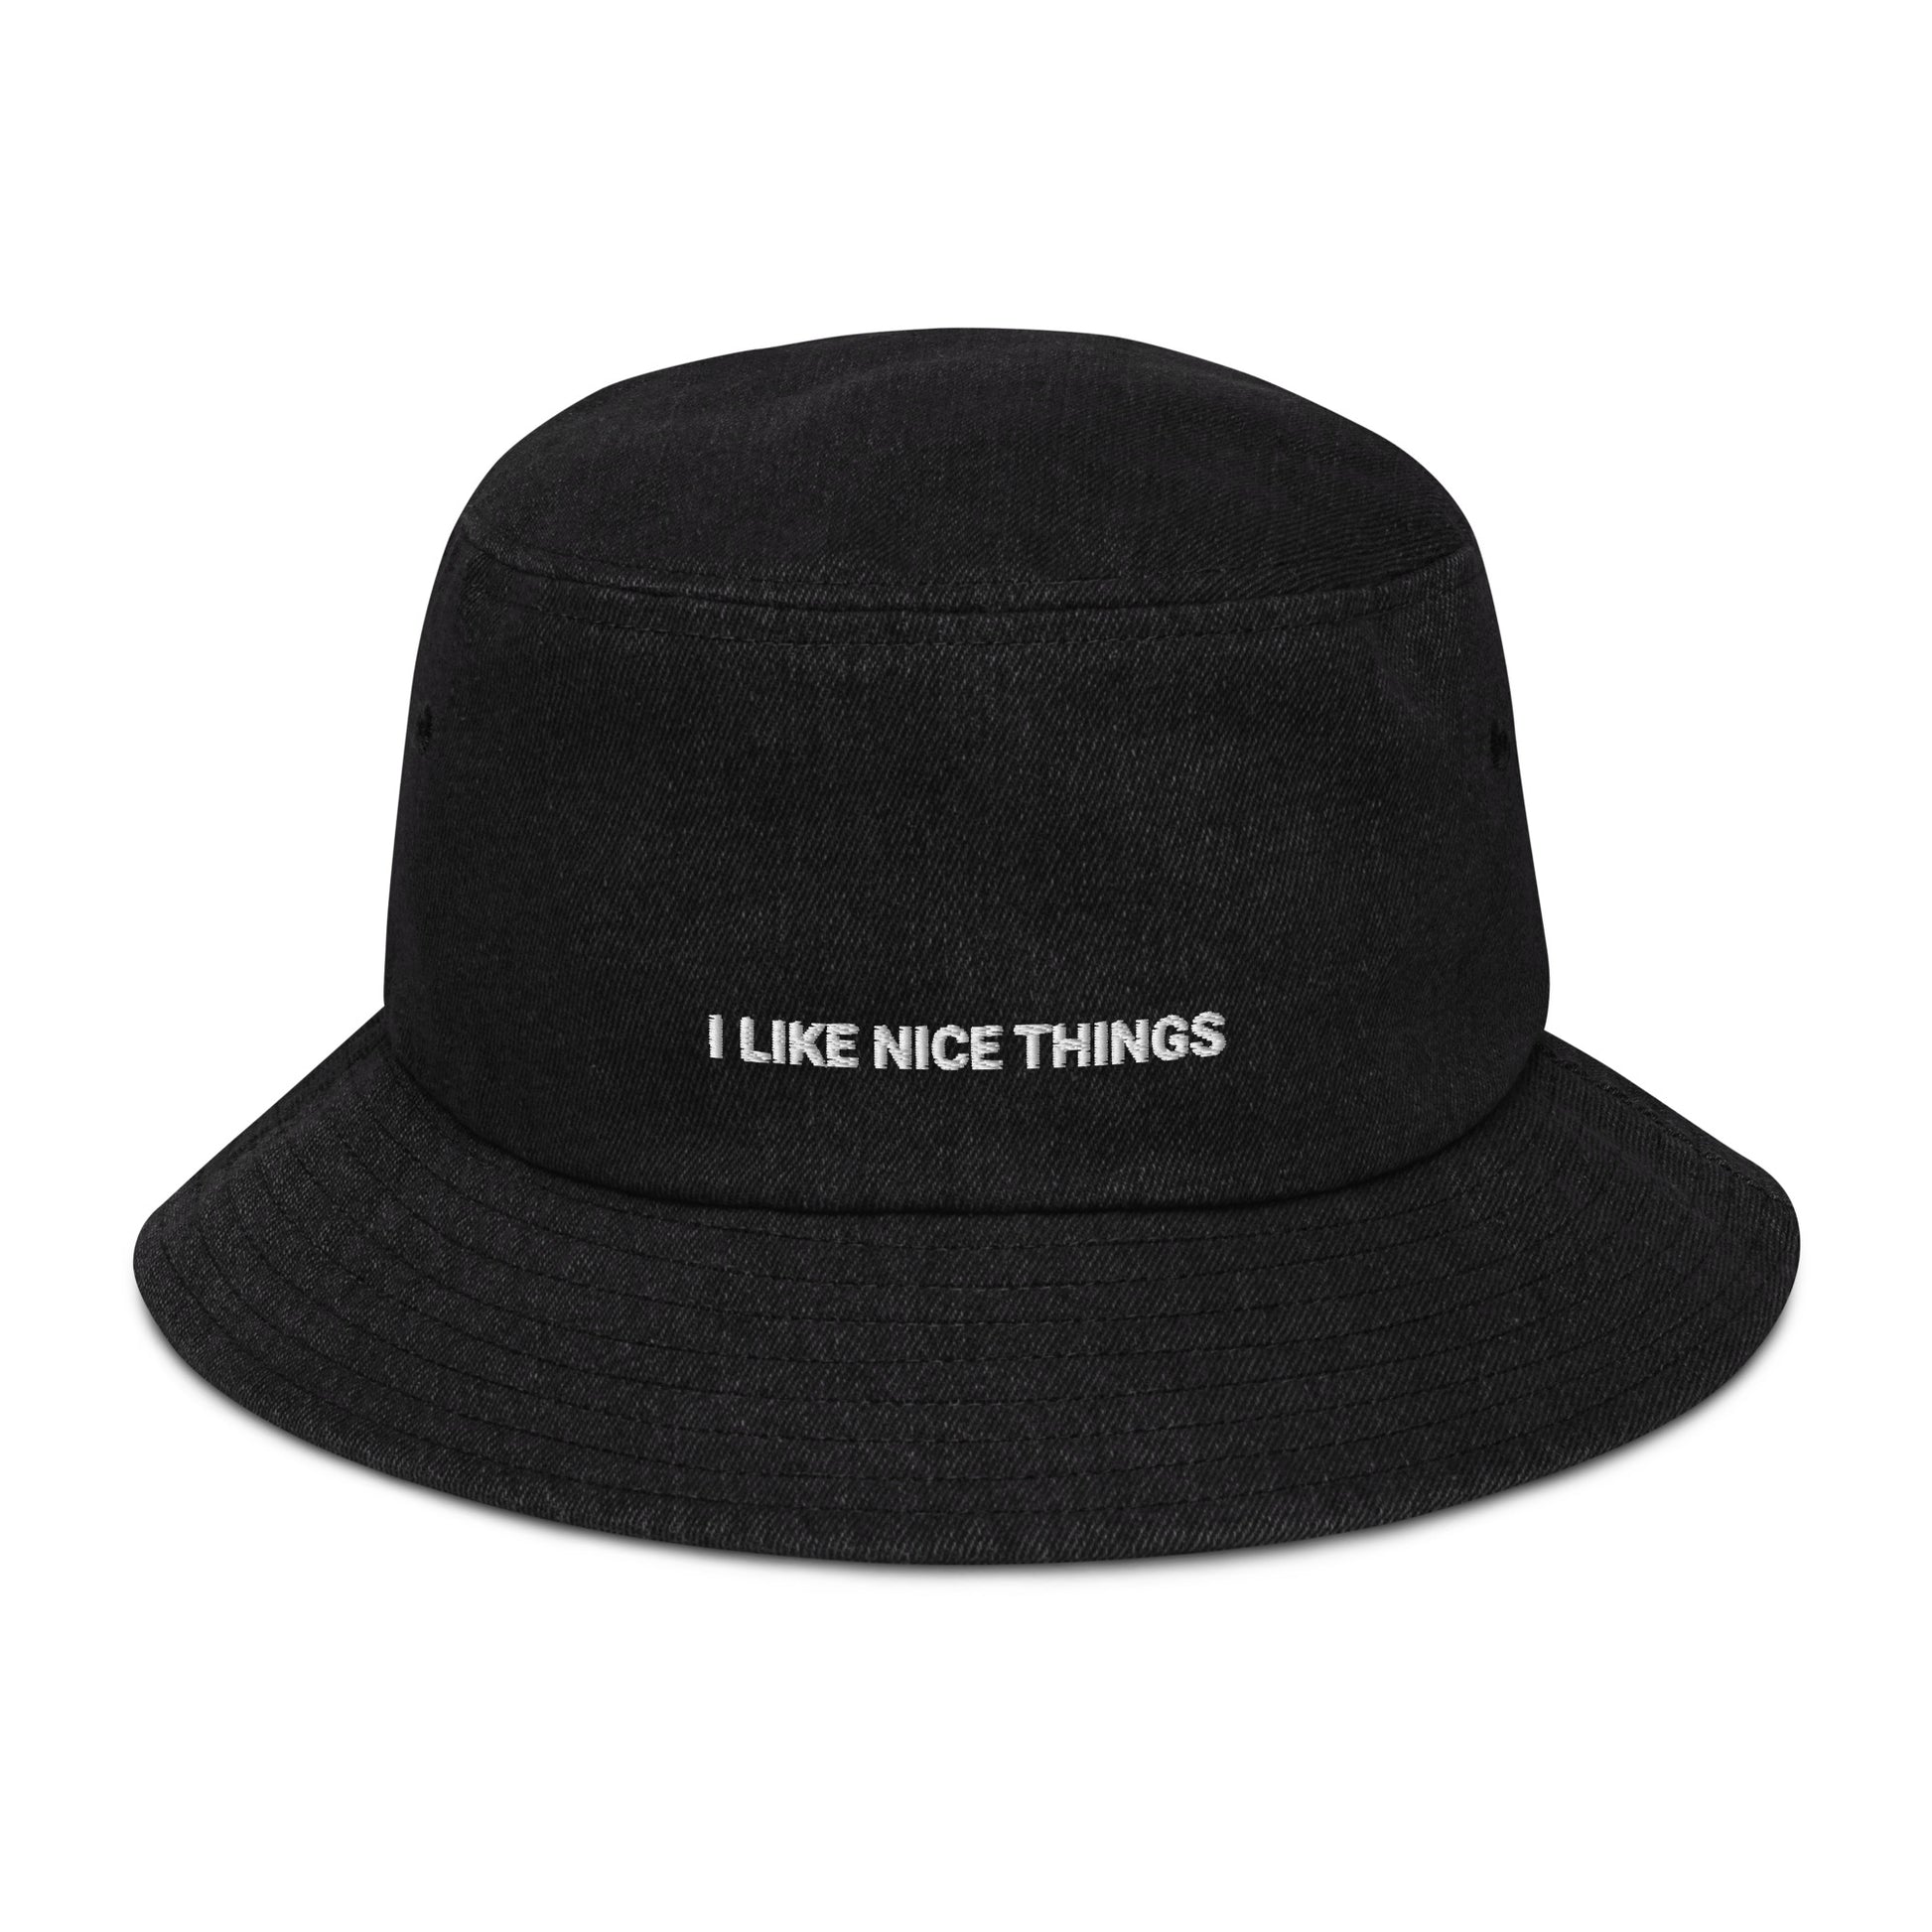 Denim bucket hat - MUCH NICER